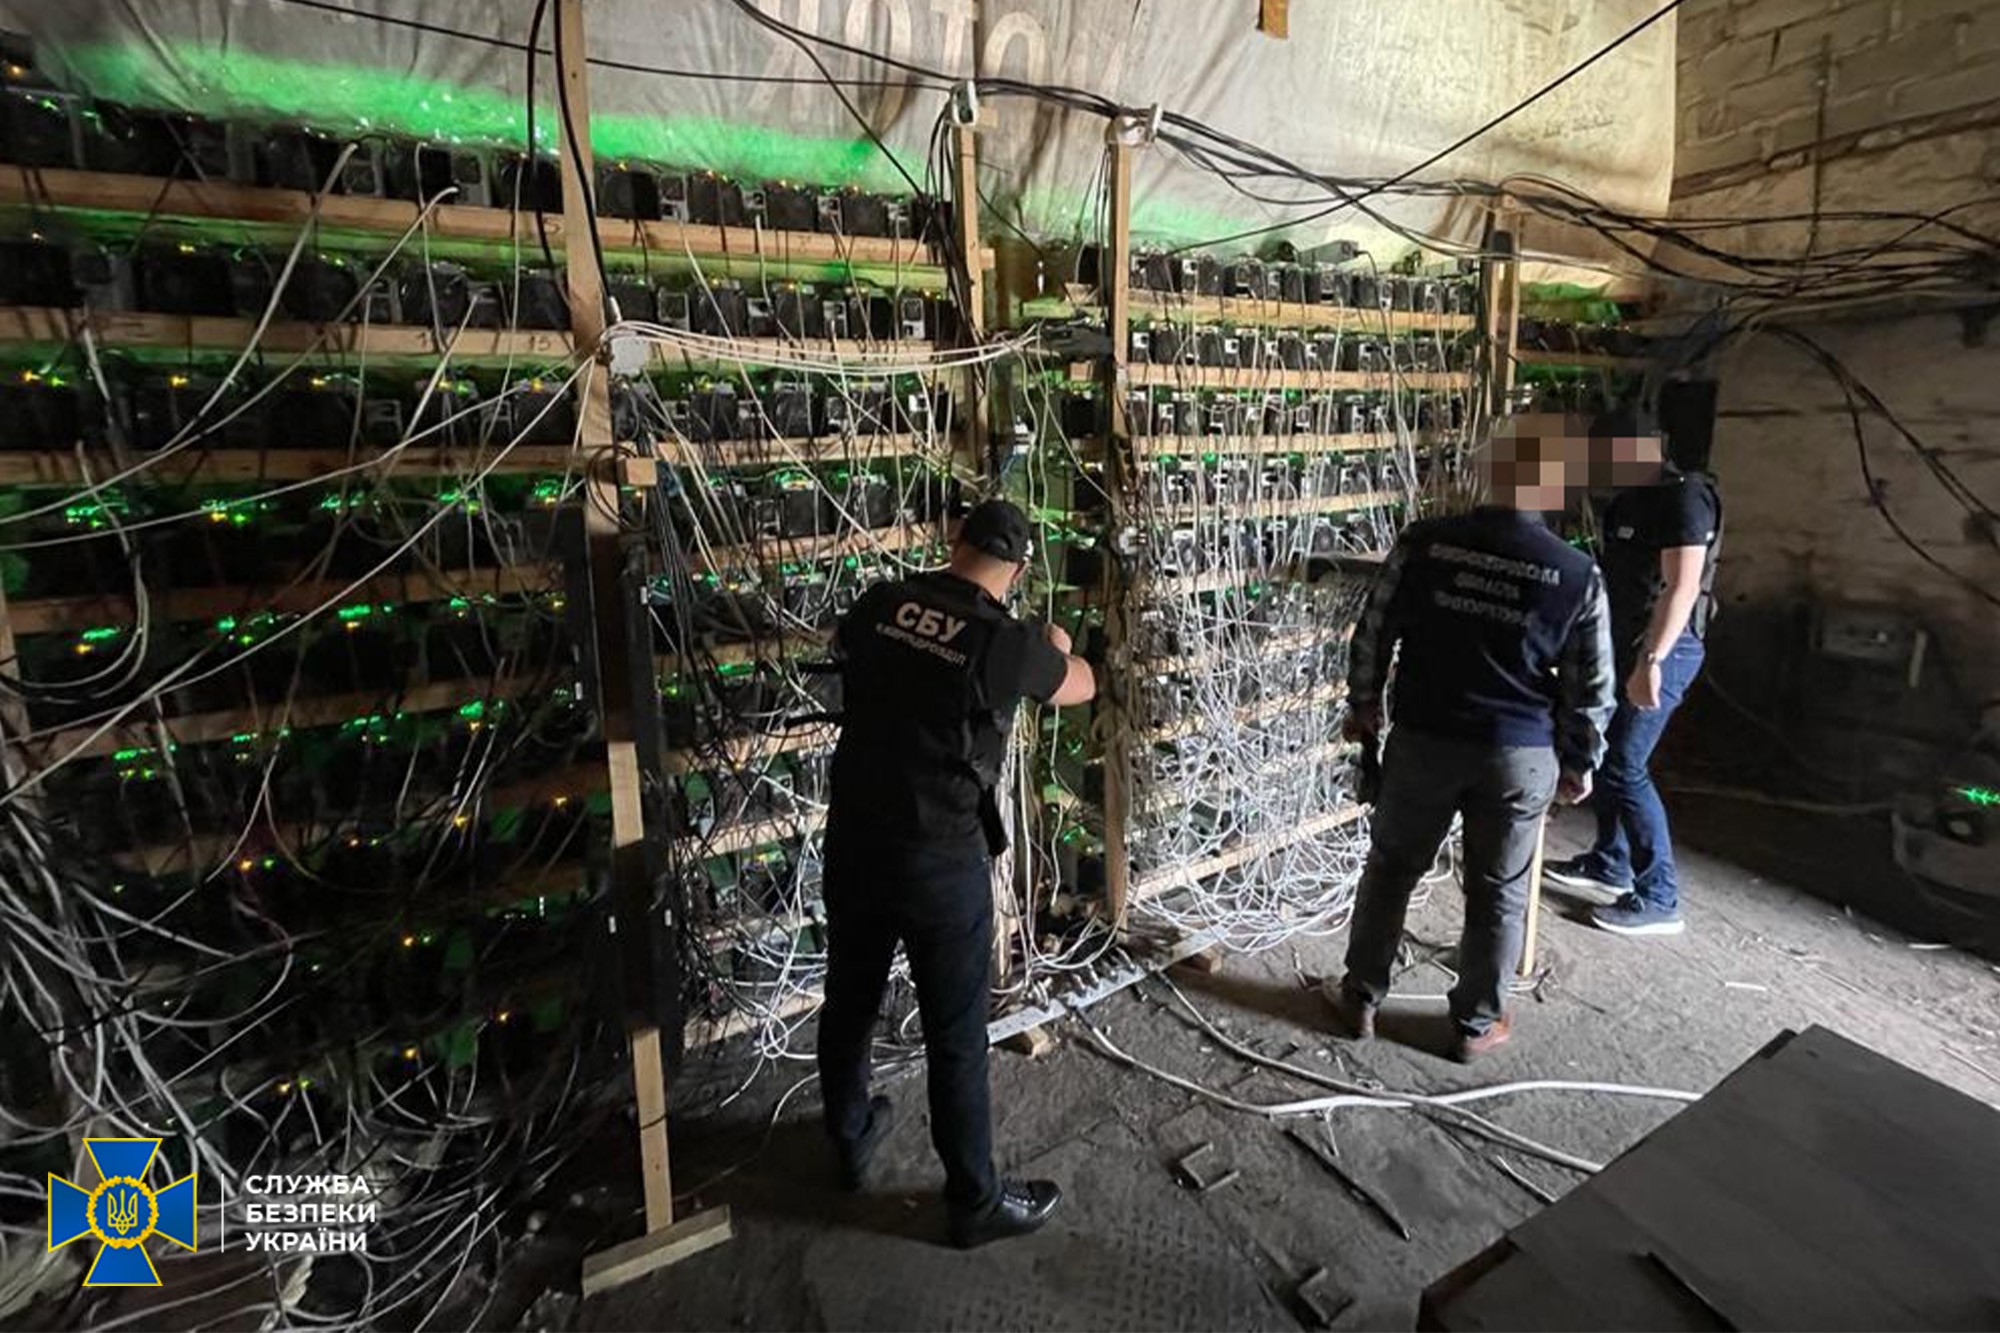 СБУ заблокировала дерзкую майнинг-ферму: криптовалюту добывали в сарае «прямо из трансформатора»